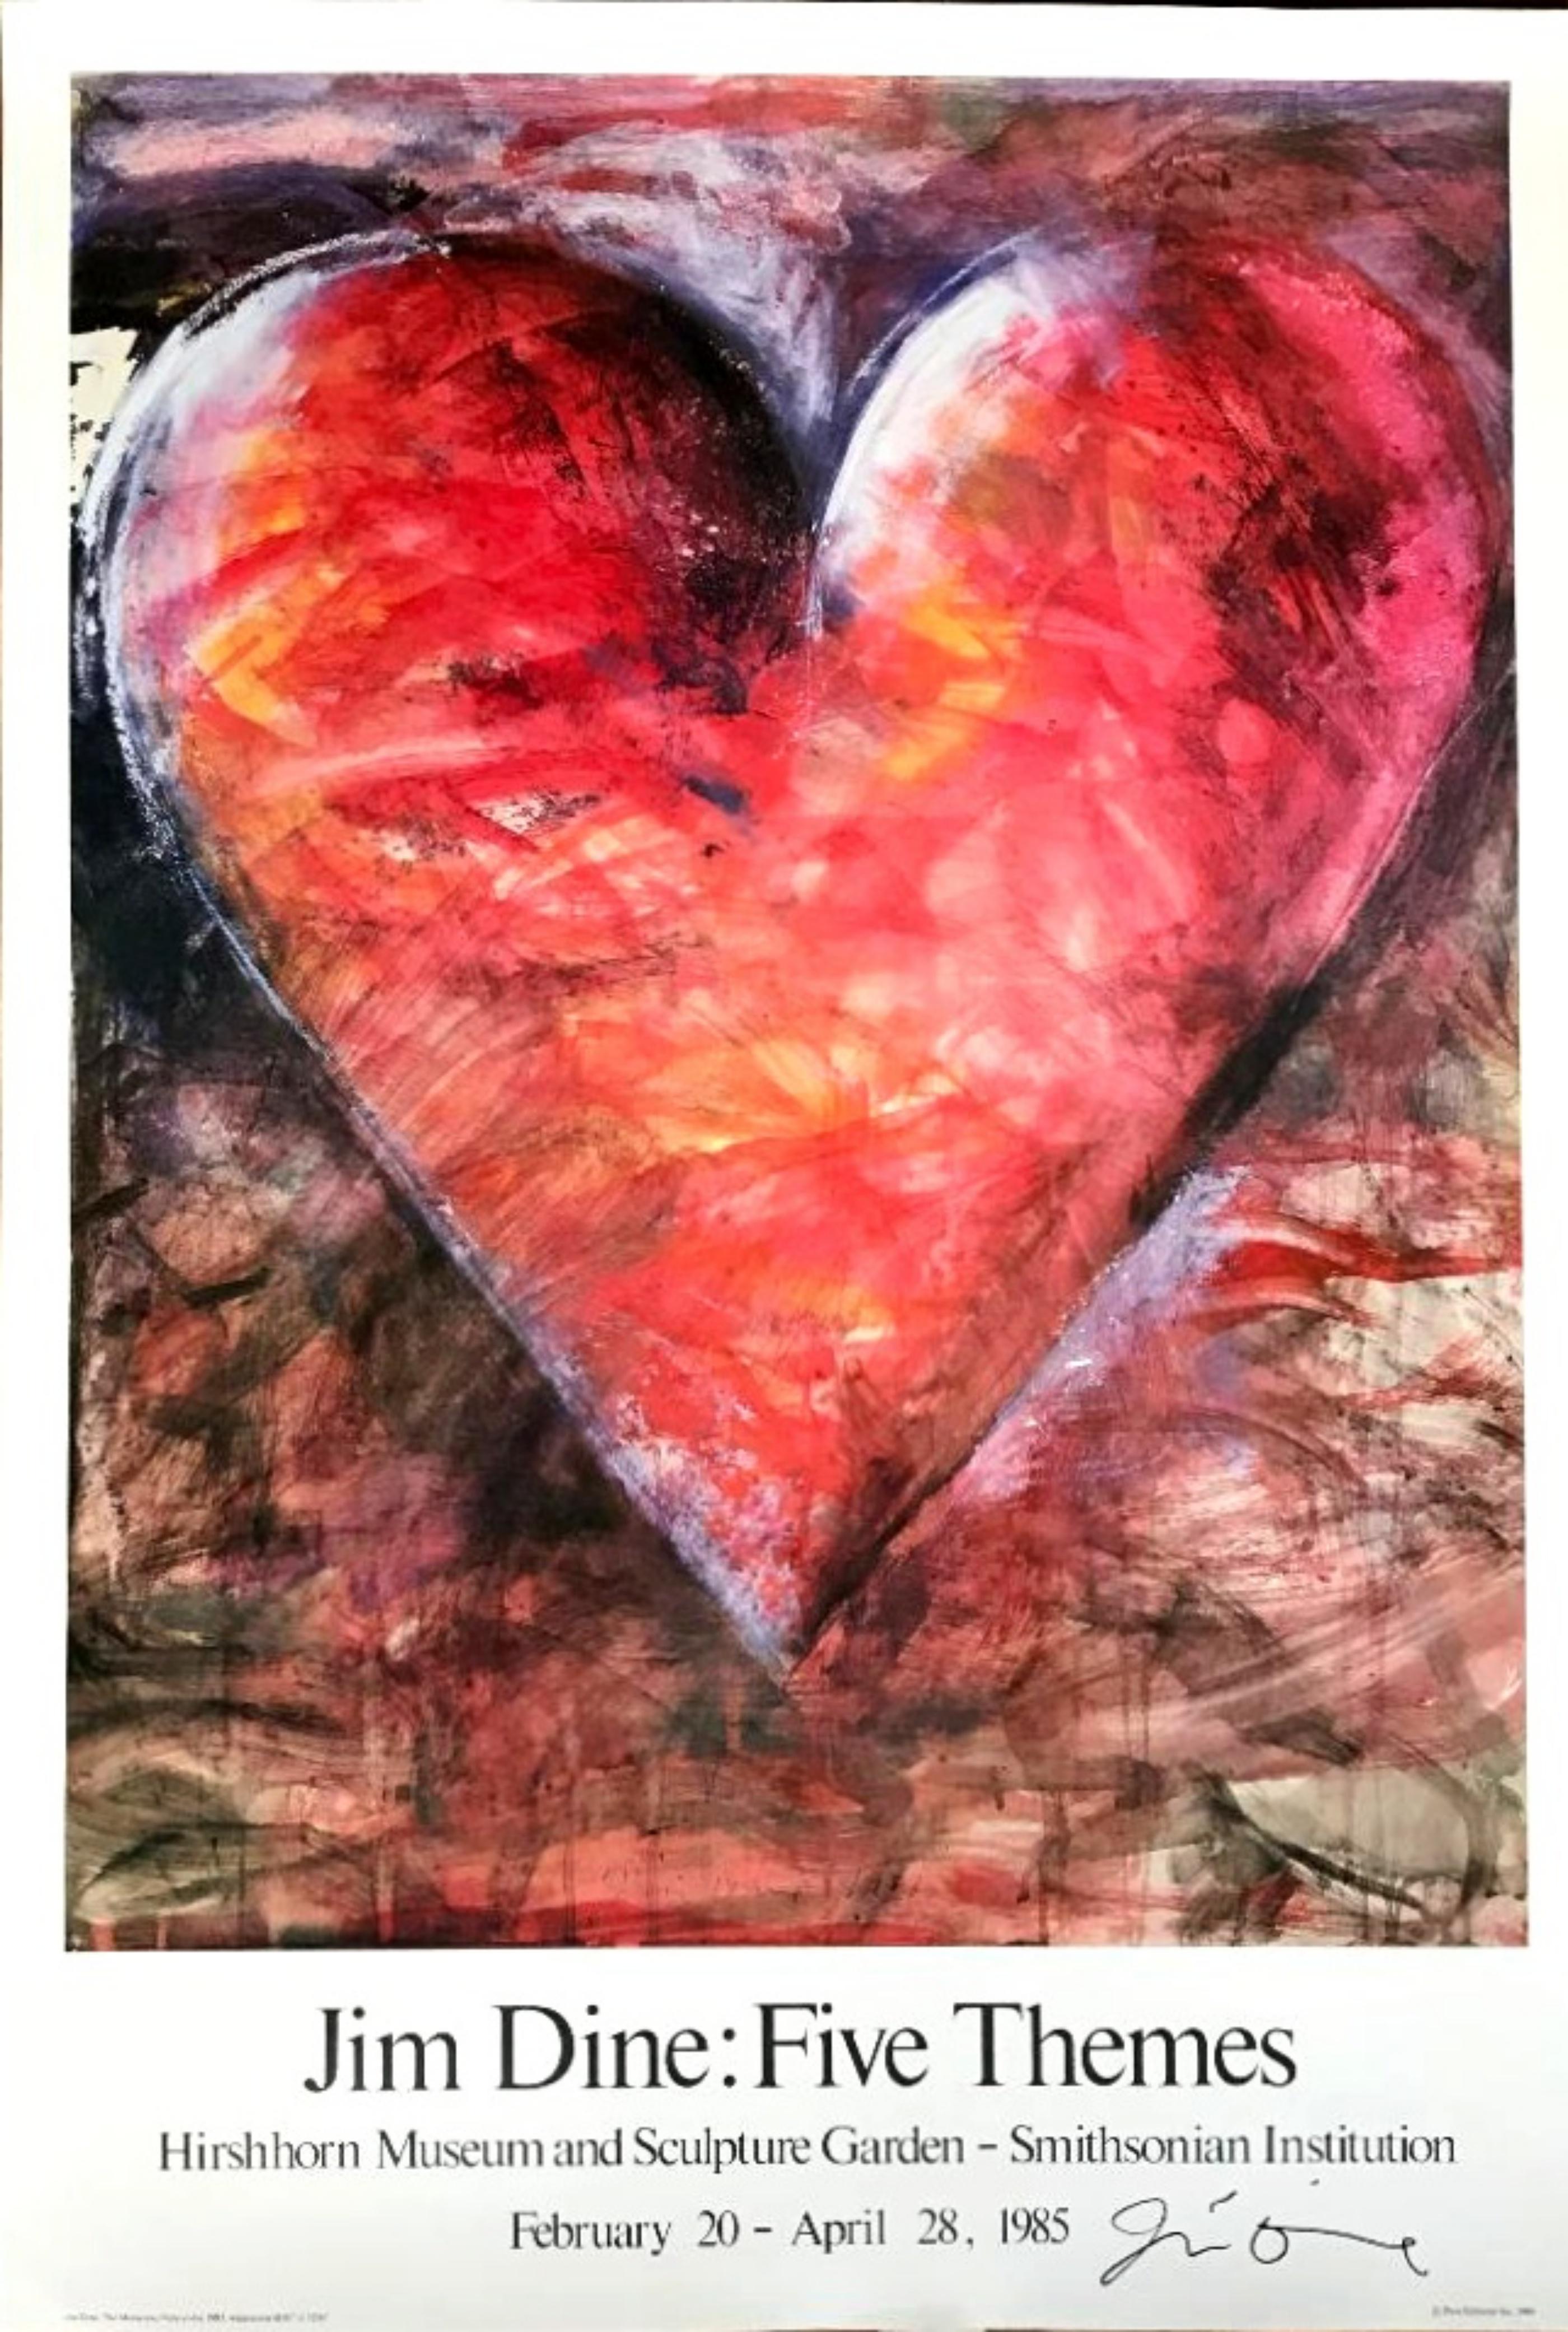 Jim Dine: Fünf Themen, limitierte Auflage, rotes Herzplakat (Handsigniert von Jim Dine)